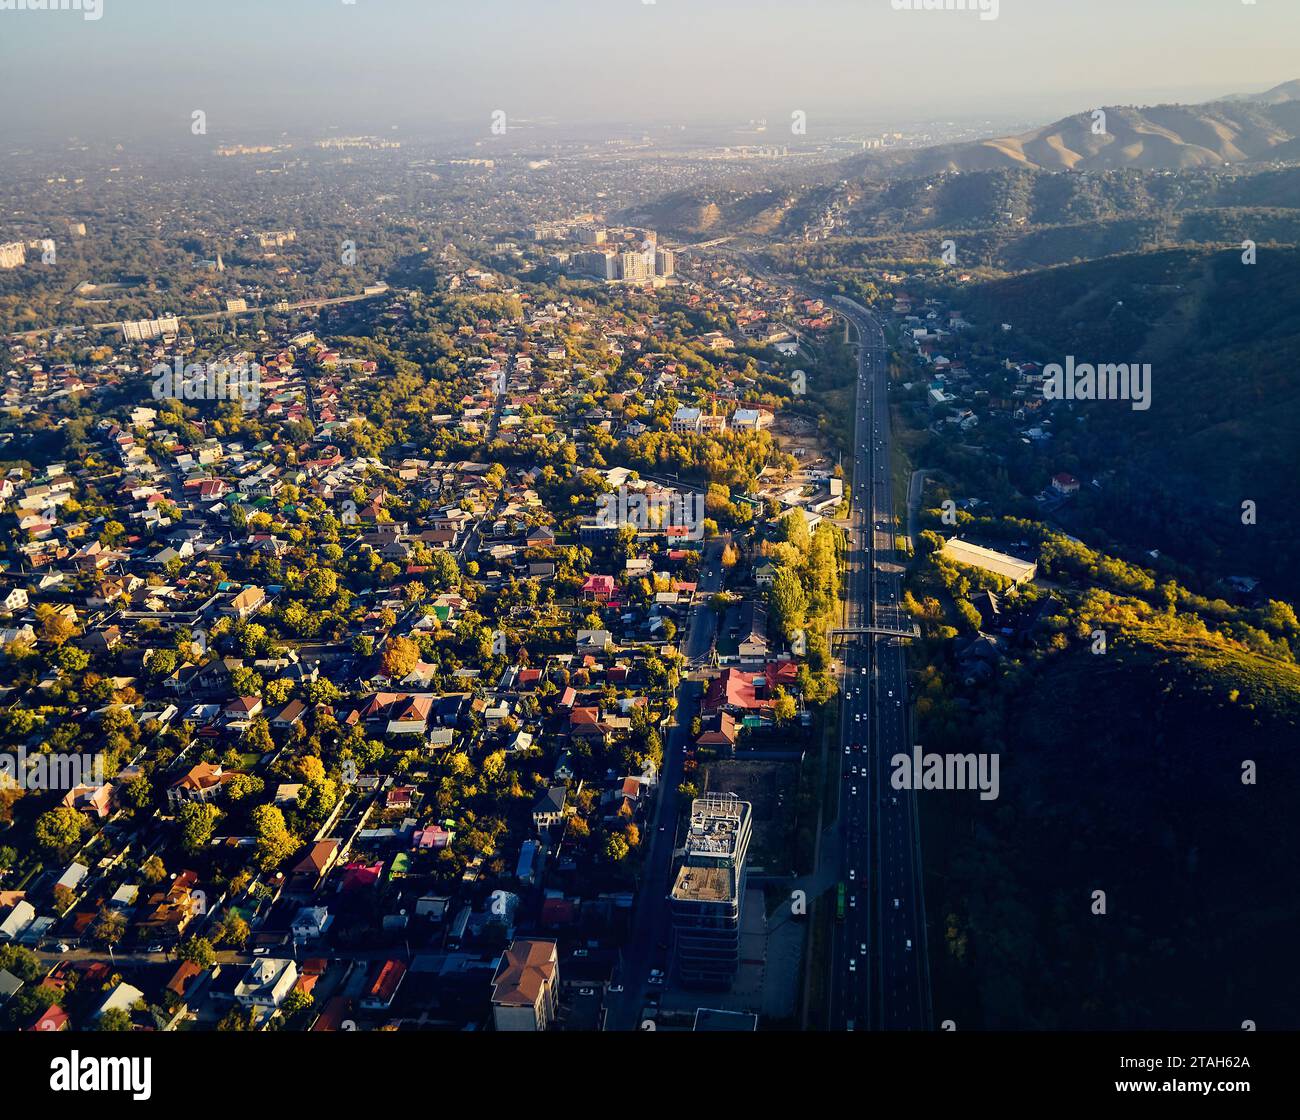 Panorama aérien drone de l'avenue Alfarabi avec circulation automobile et grands bâtiments dans la ville d'Almaty, Kazakhstan Banque D'Images